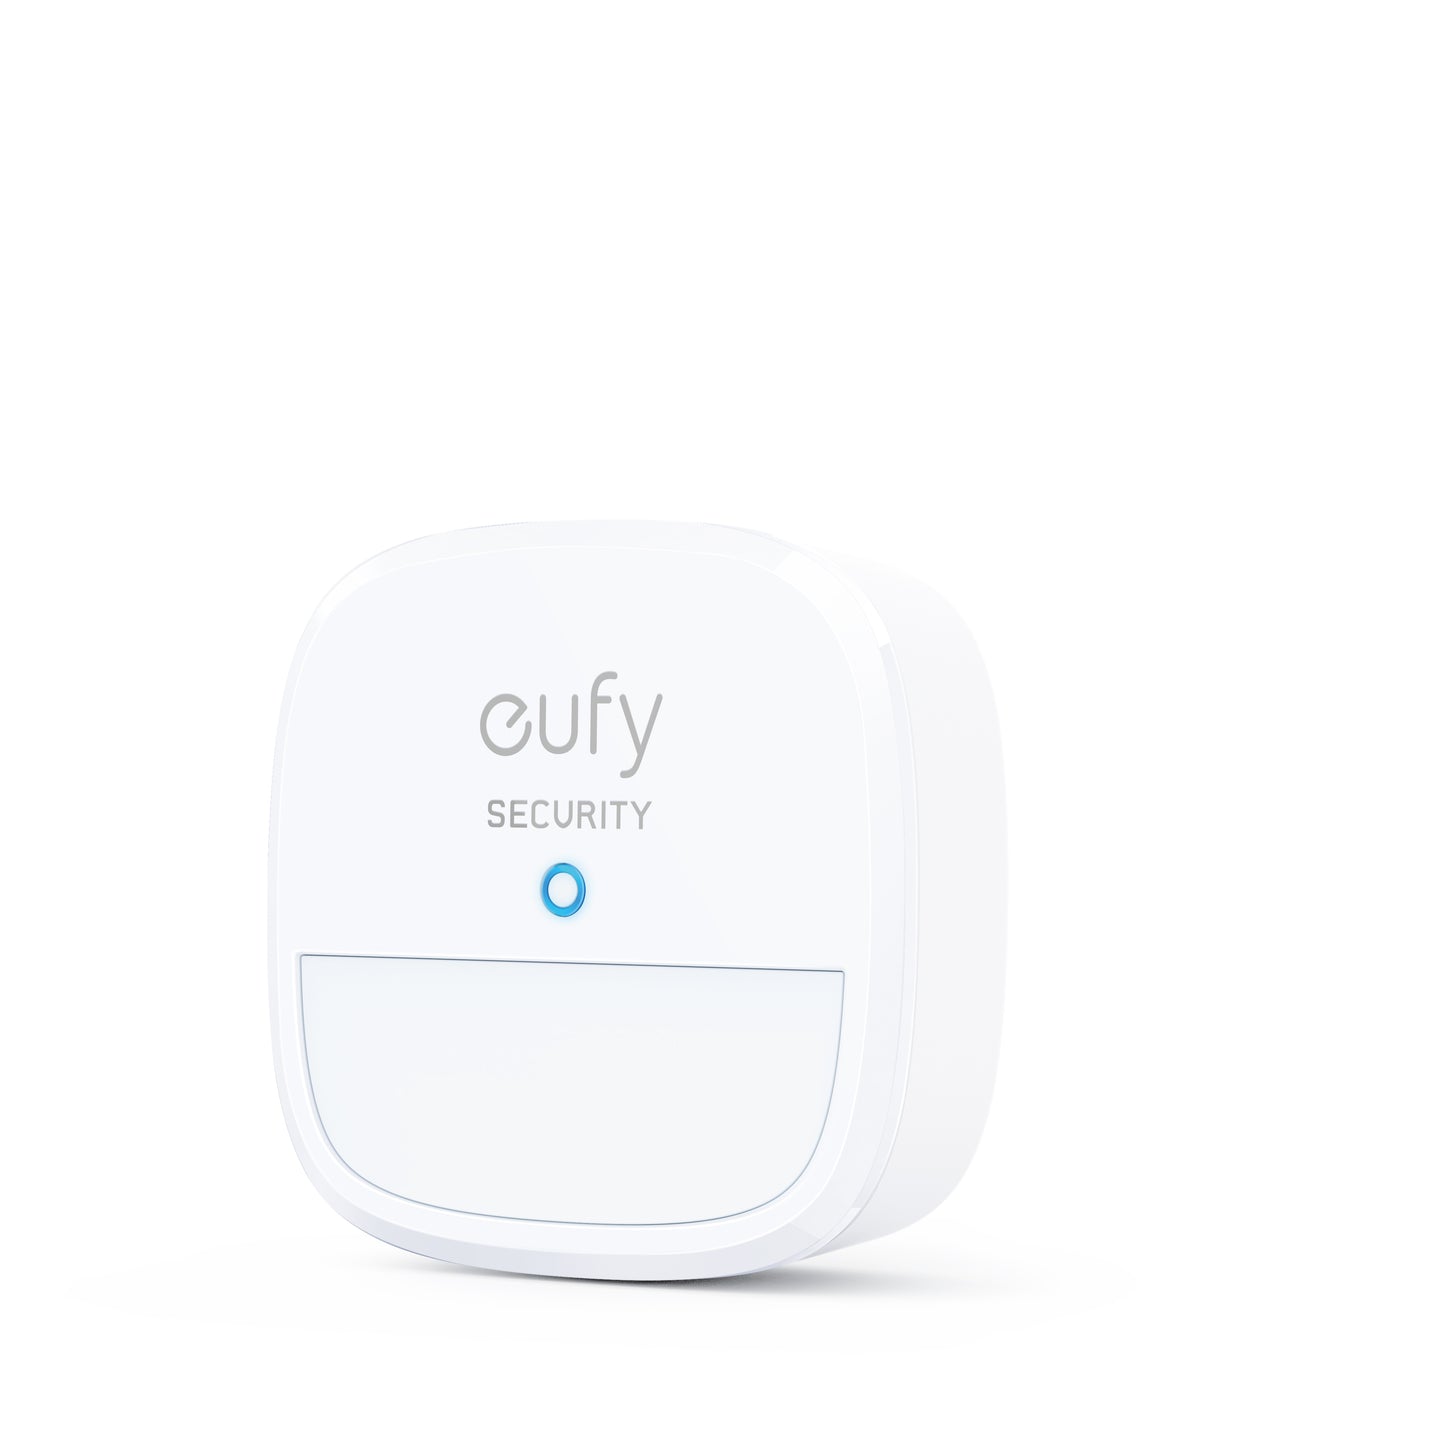 Eufy Motion Sensor Addon